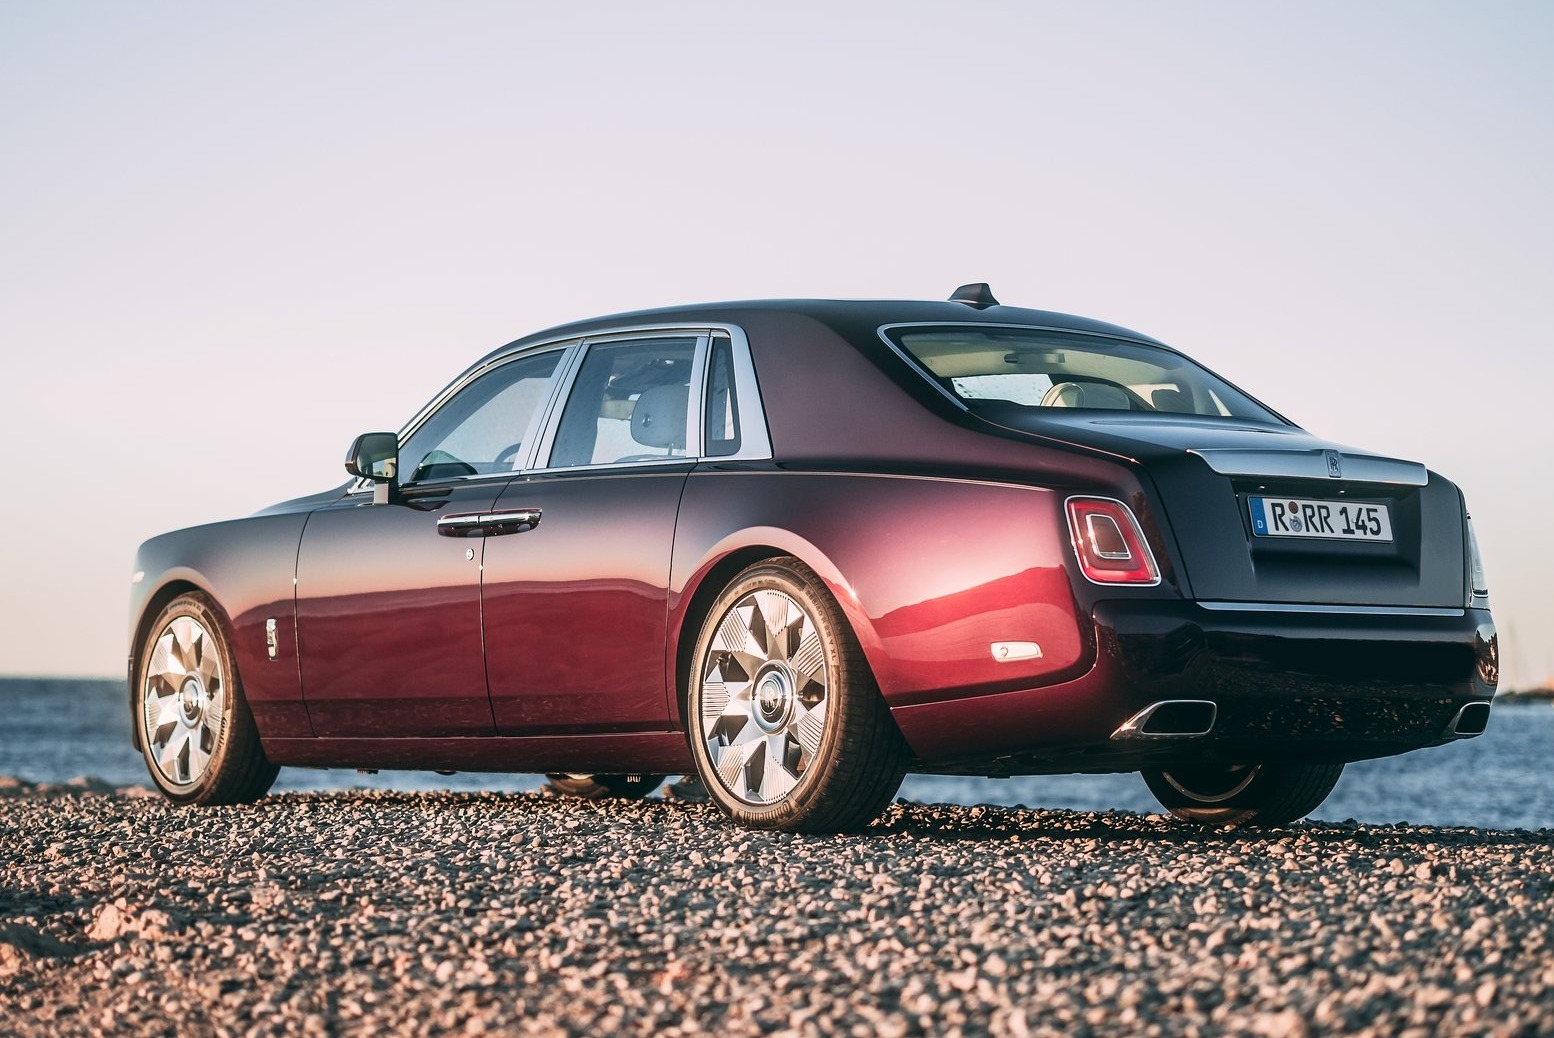 Rolls-Royce Phantom Limousine in Braun gebraucht in Köln für € 143.480